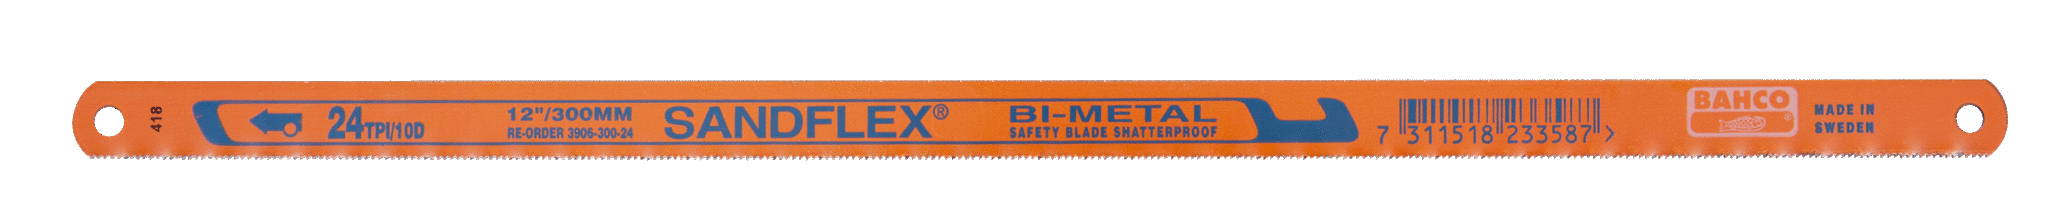 Биметаллические ножовочные полотна SANDFLEX®. Новое биметаллическое полотно SANDFLEX с повышеным содержанием кoбальта BAHCO 3906-300-14-5P